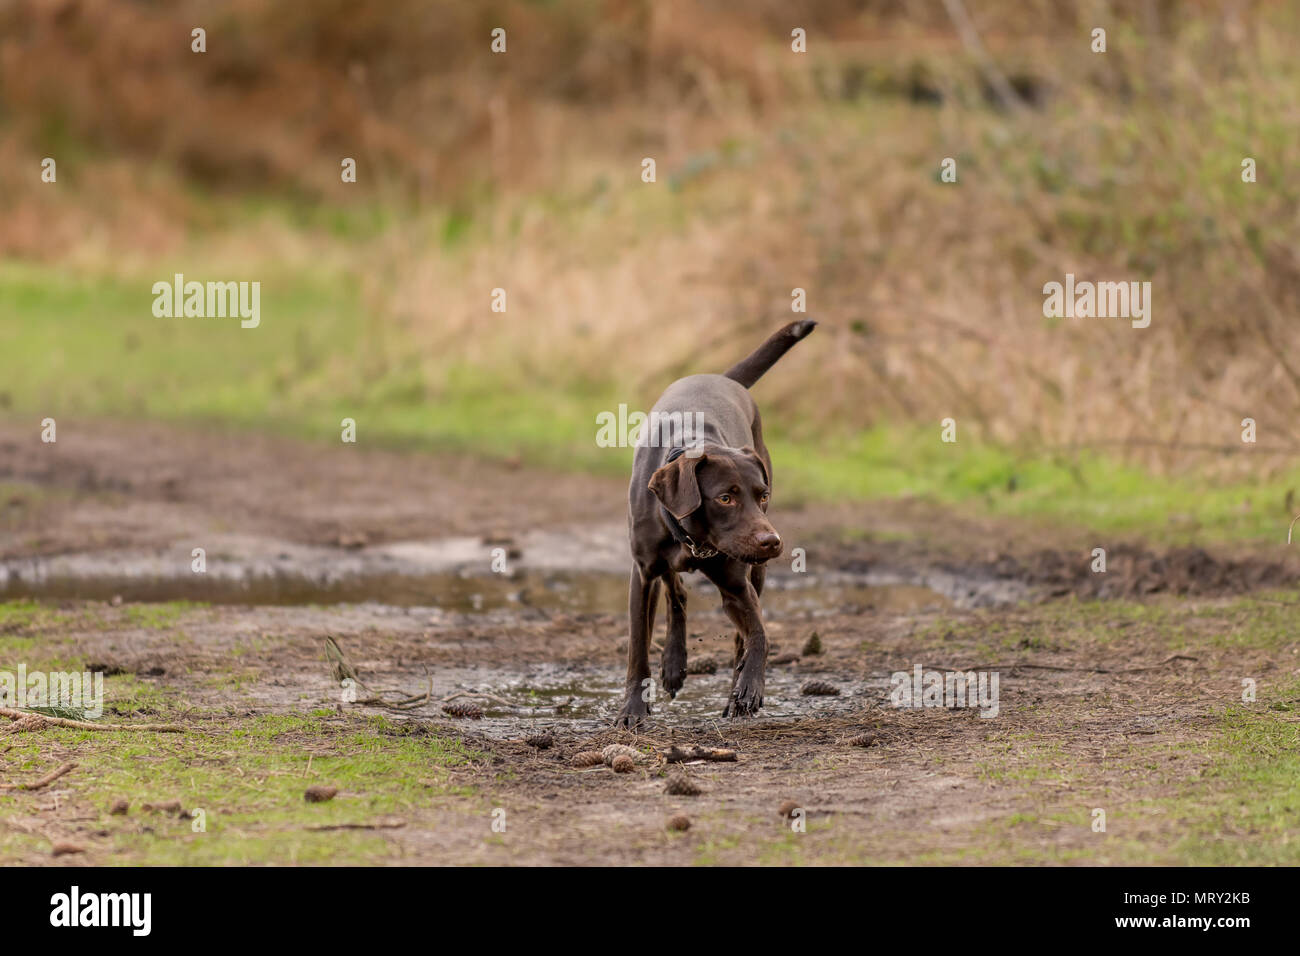 Brauner hund Fuß in Richtung der Kamera auf einem Wald weg von Tannennadeln, Tannenzapfen und Pfützen. Hund ist ein Labrador Dalmatiner Kreuz. Stockfoto